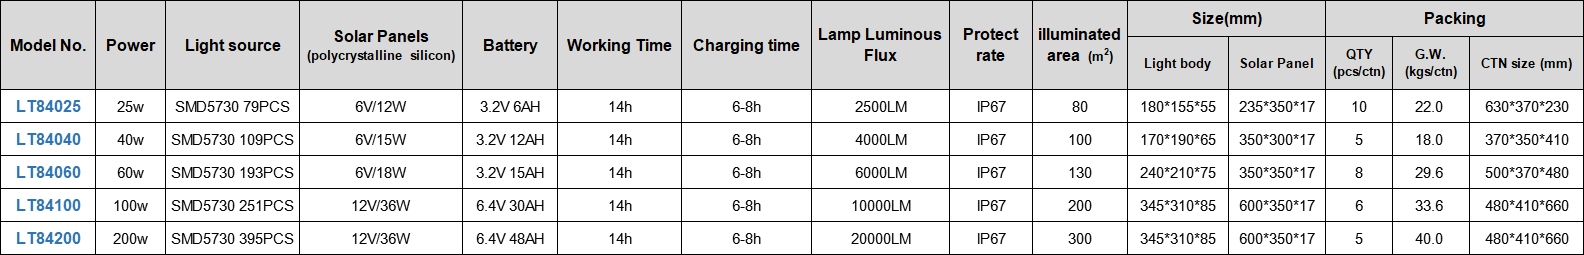 Technologia LITEL Słoneczna LED Light Light for Warehouse-1